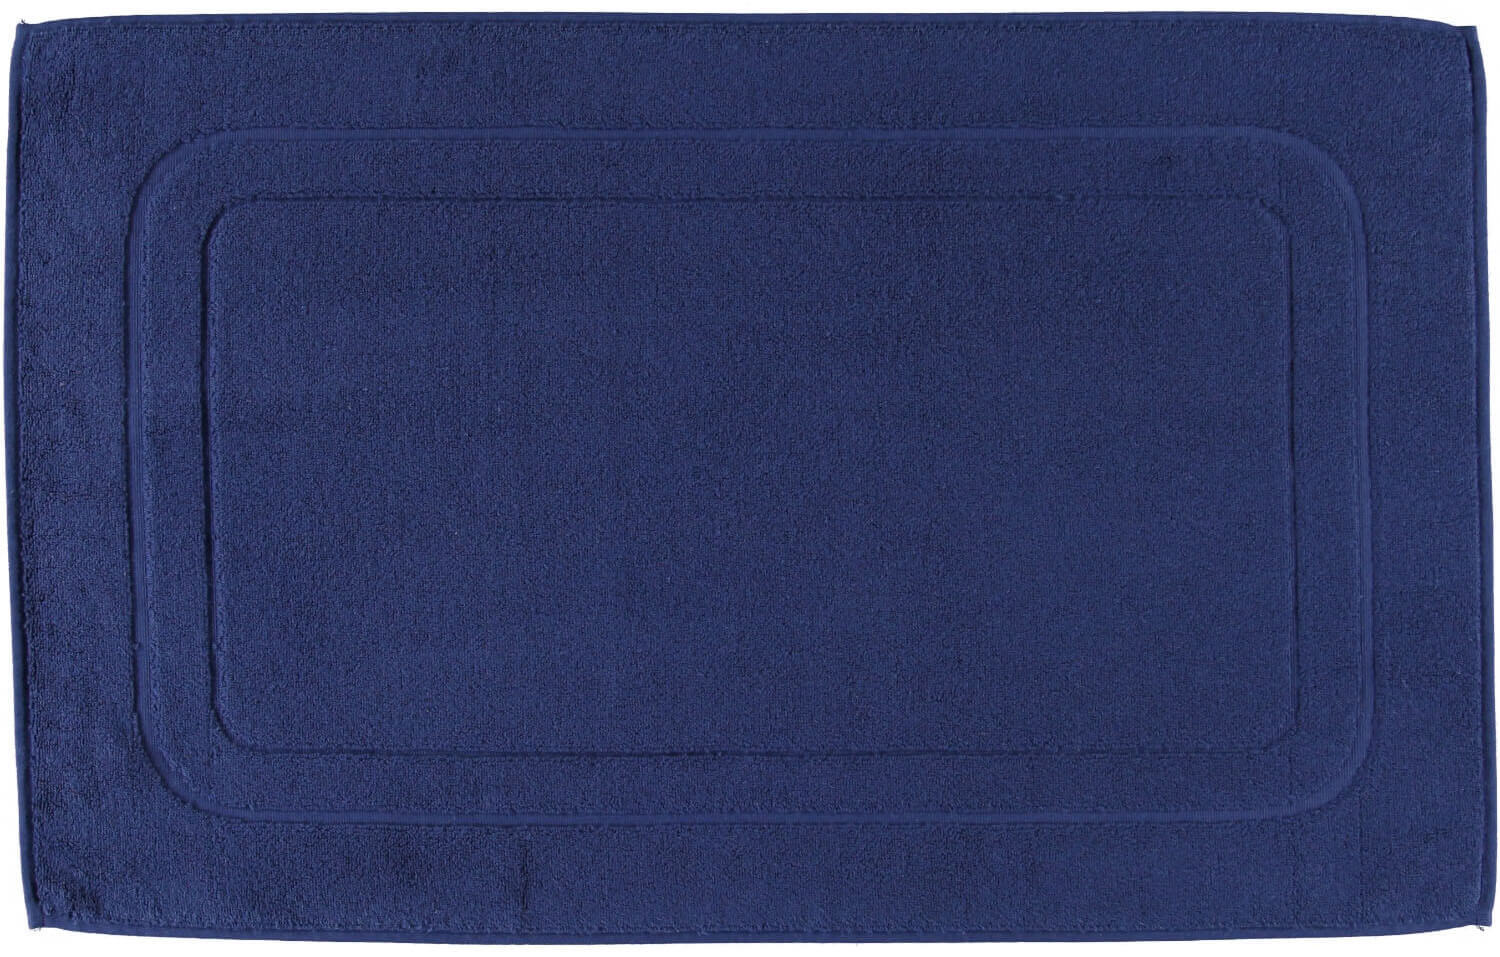 Полотенце для ног Plain Dyed Navy